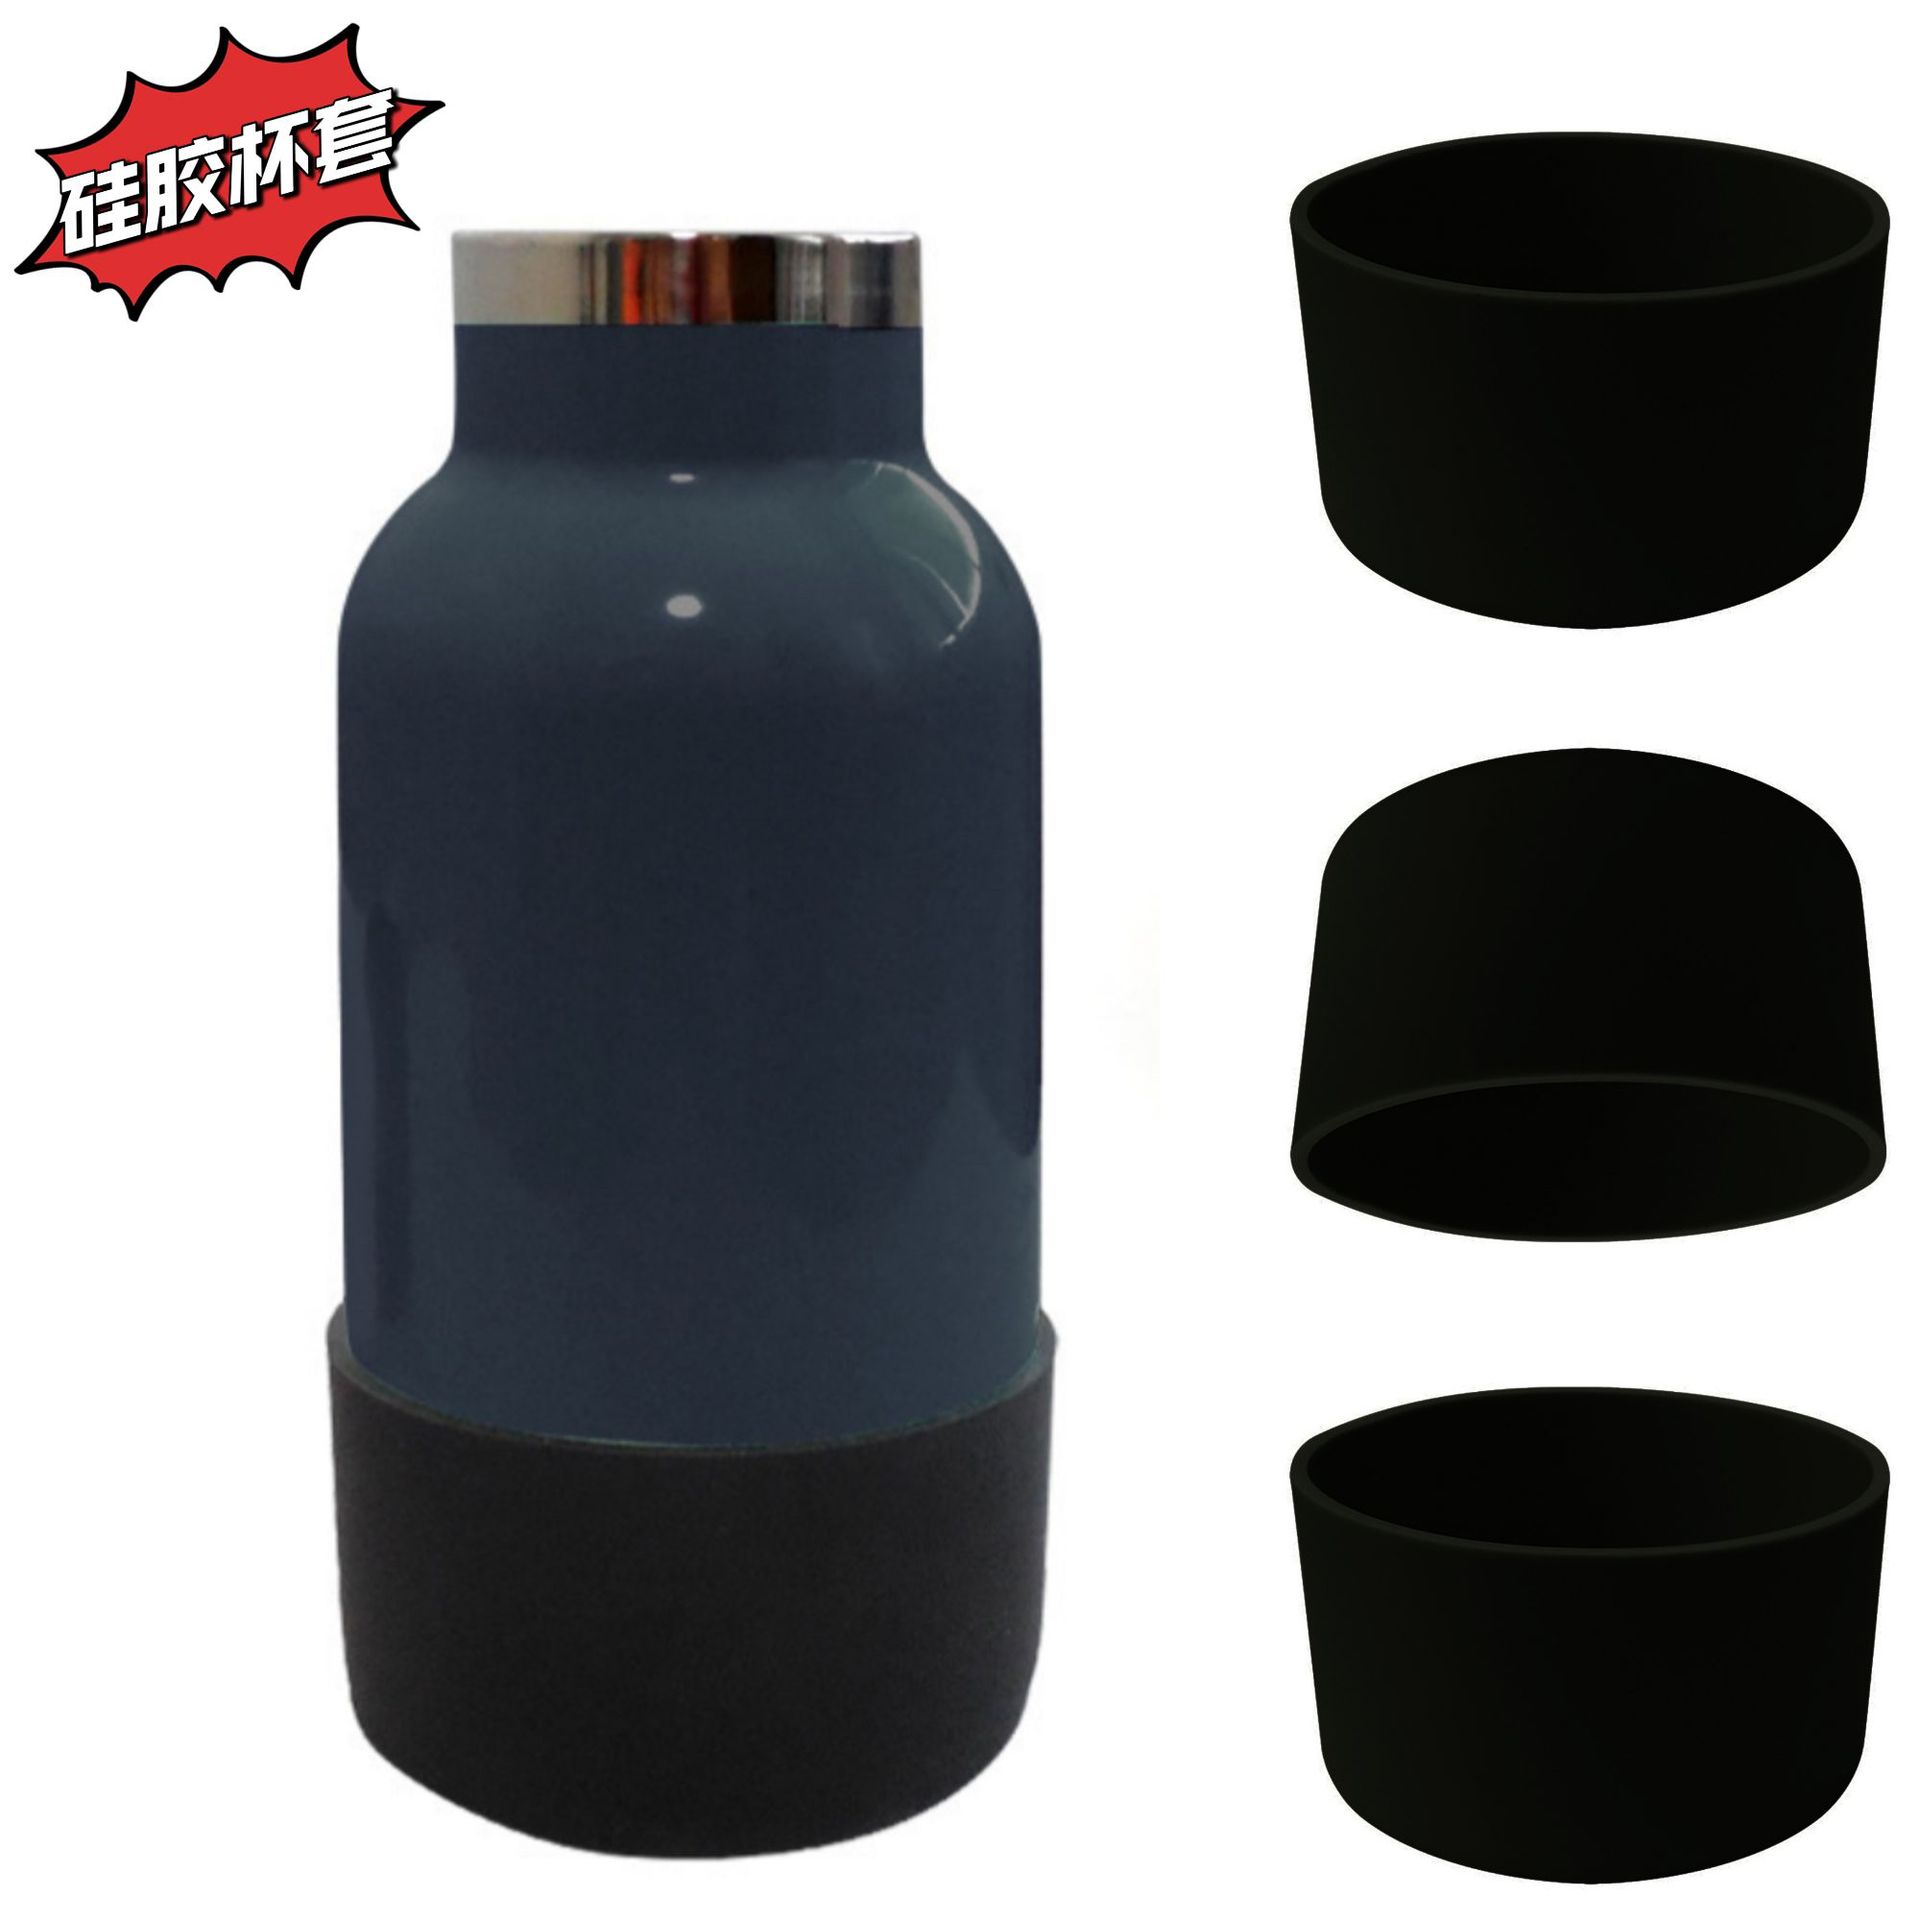 hydro flask 亚马逊 硅胶隔热水杯套 保温杯套 保护水瓶防滑底套